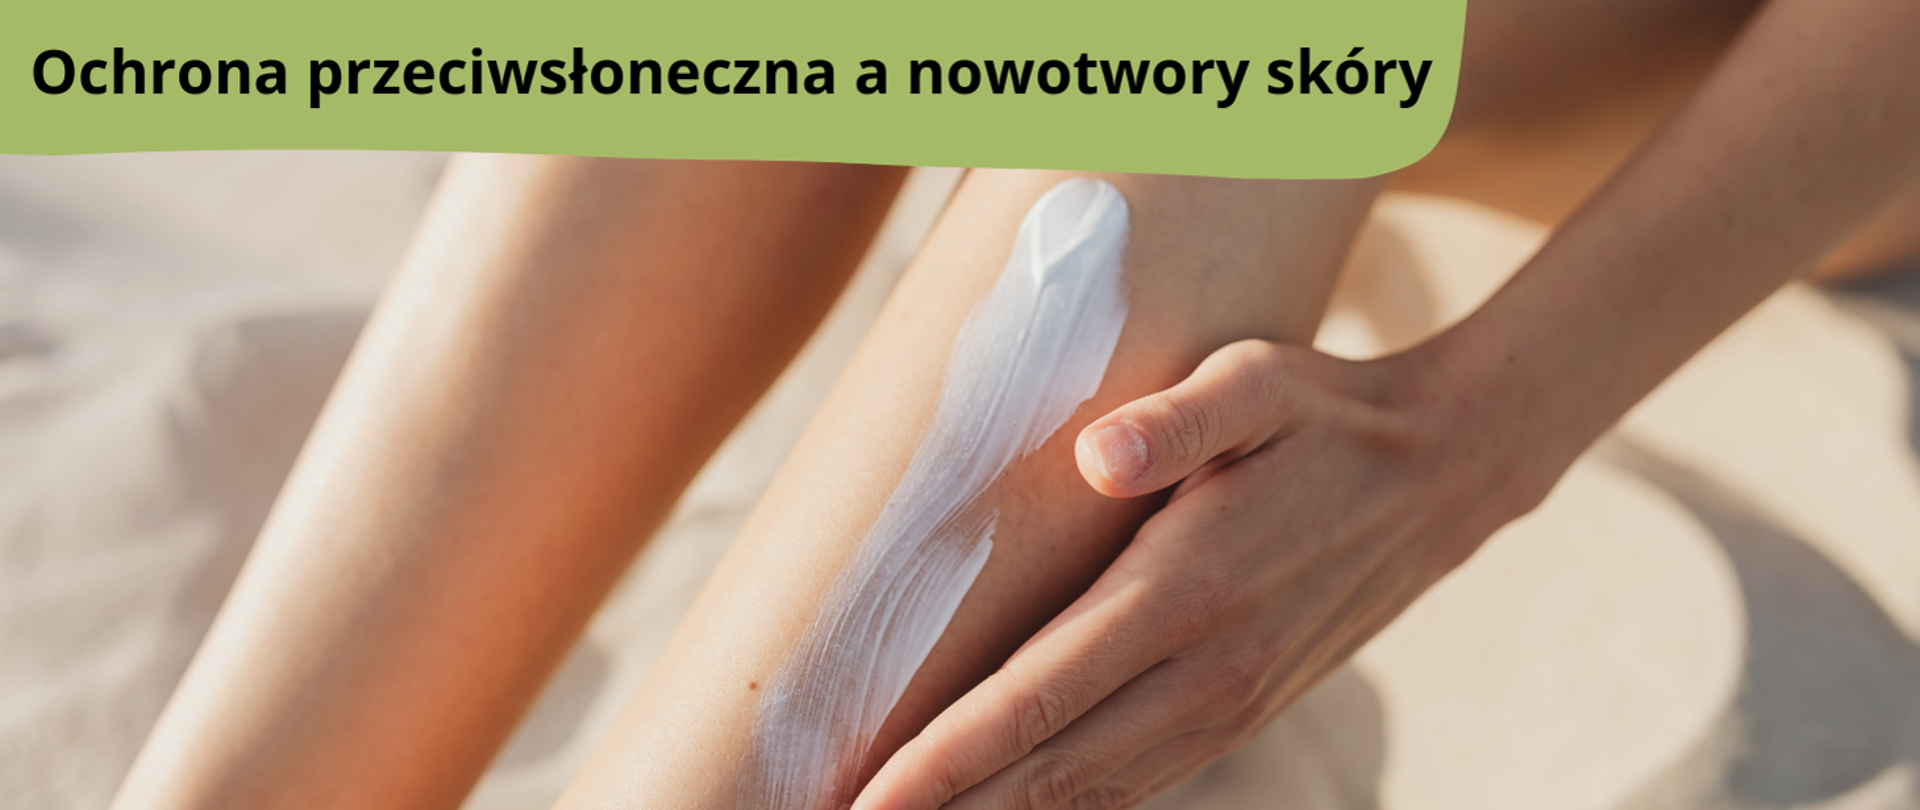 Napis: Ochrona przeciwsłoneczna a nowotwory skóry. Na zdjęciu kobieta nakładająca krem przeciwsłoneczny na nogi.